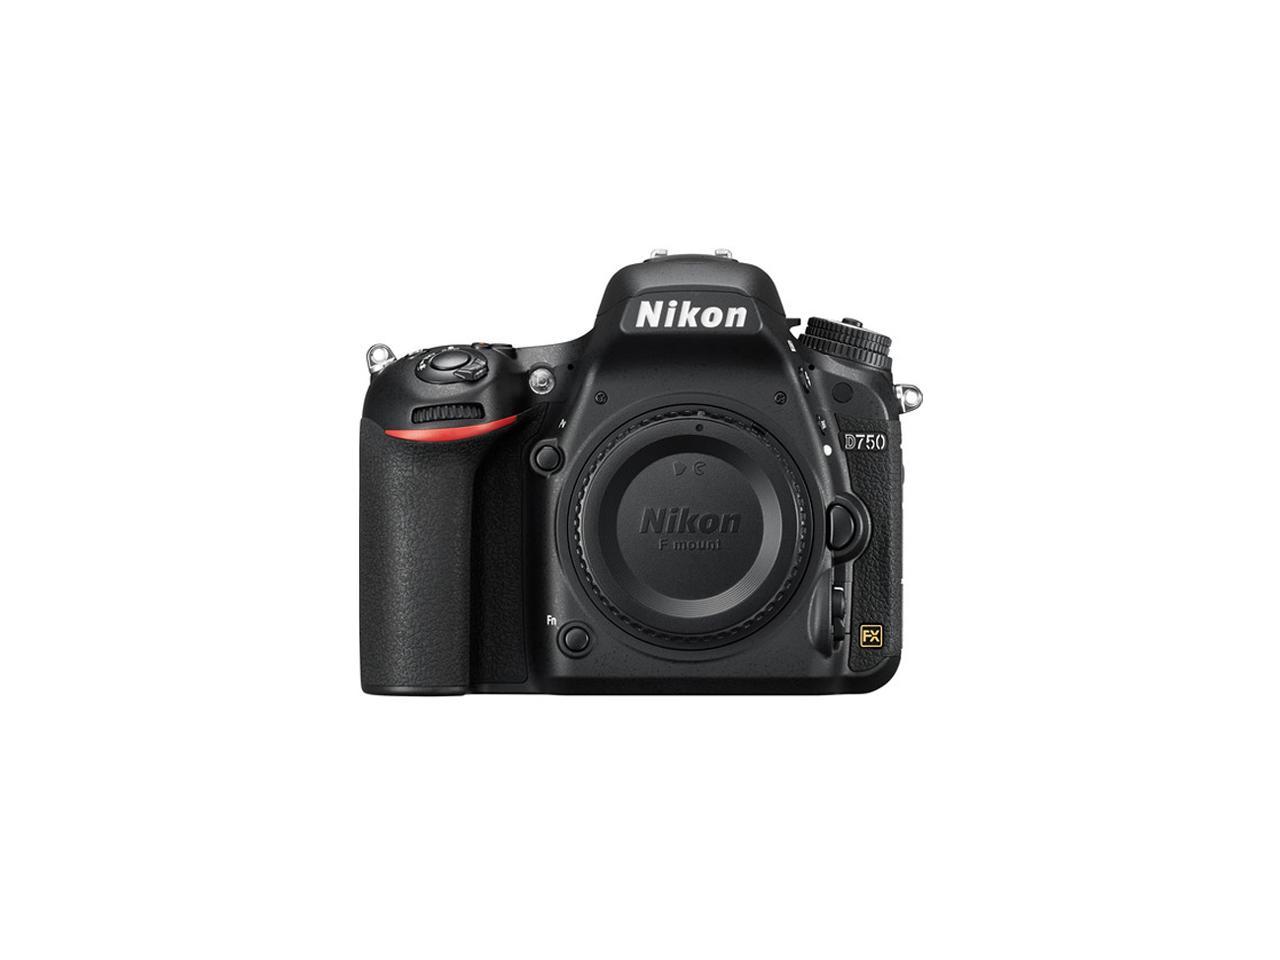 NEW Nikon D750 Digital SLR Camera FX-format Full Frame DSLR 24.3 MP (Body Only) - International Version